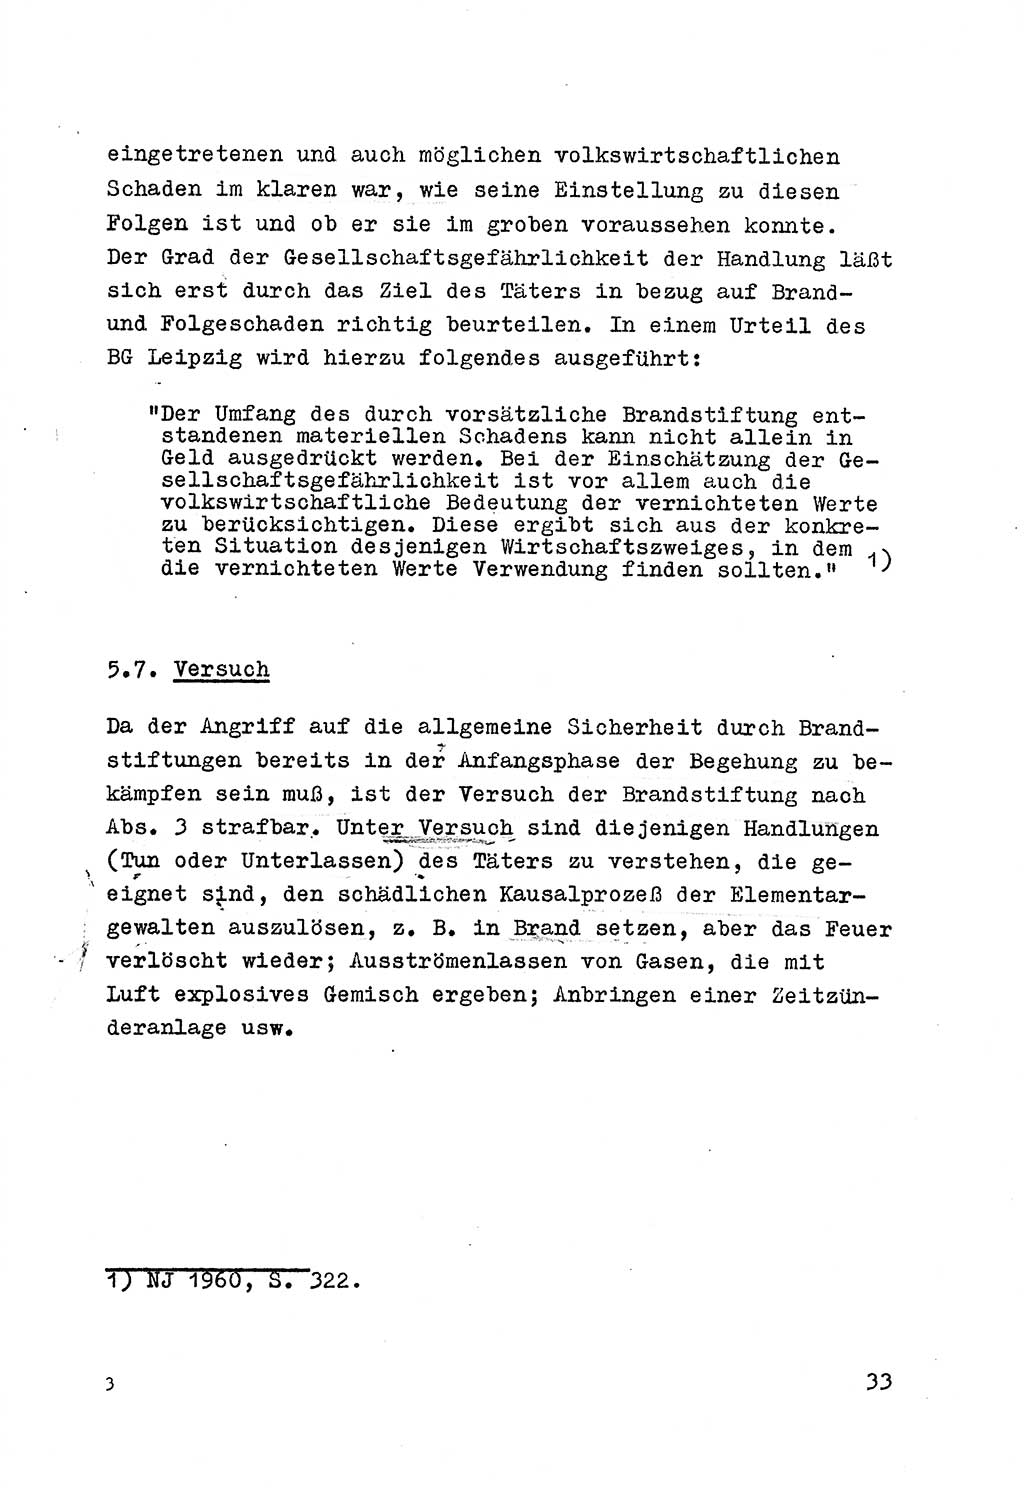 Strafrecht der DDR (Deutsche Demokratische Republik), Besonderer Teil, Lehrmaterial, Heft 7 1970, Seite 33 (Strafr. DDR BT Lehrmat. H. 7 1970, S. 33)